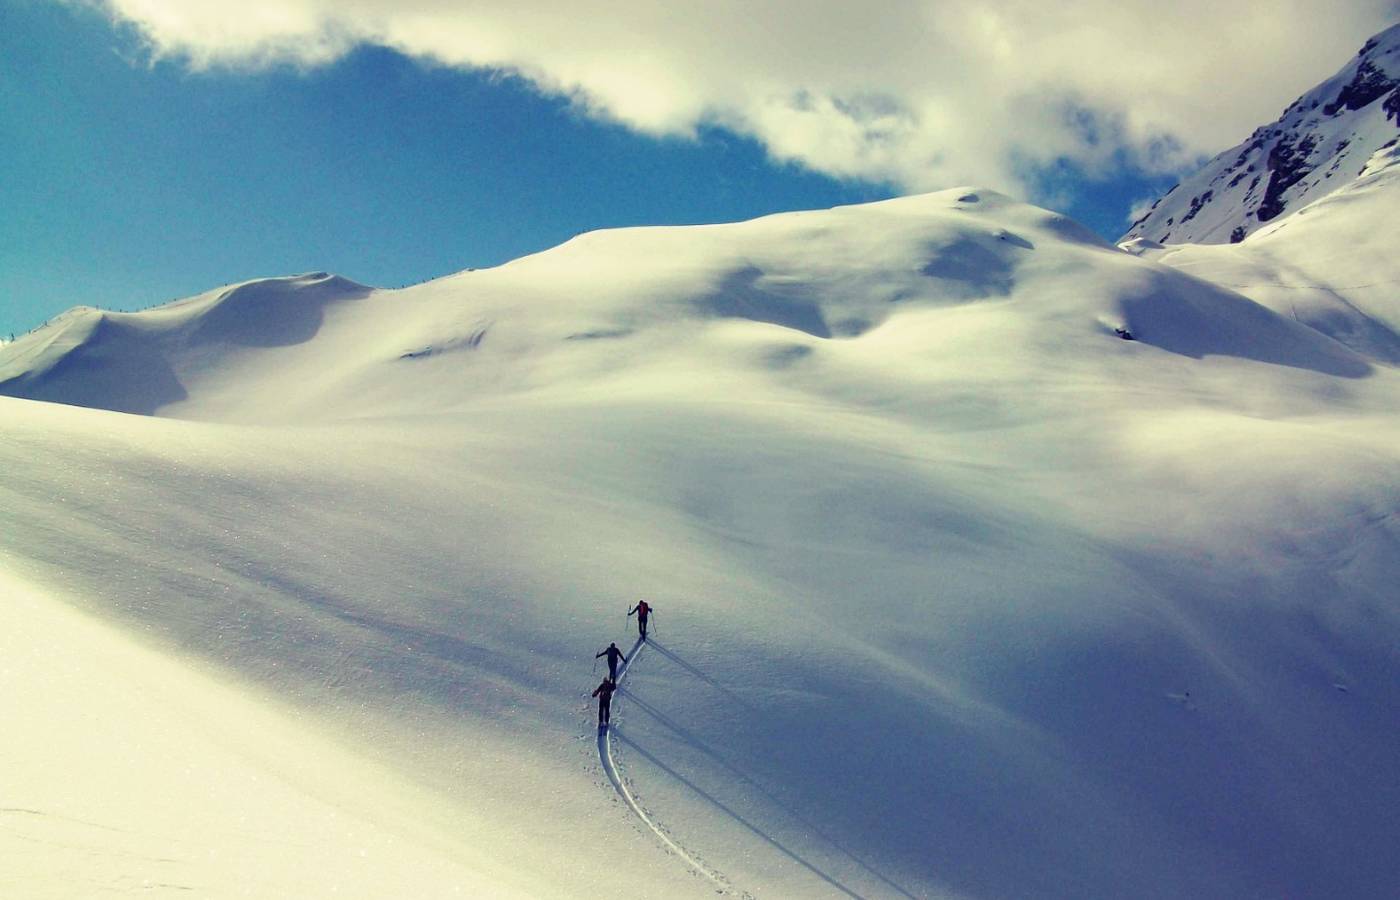 Ski mountaineering week in the Pflersch Valley